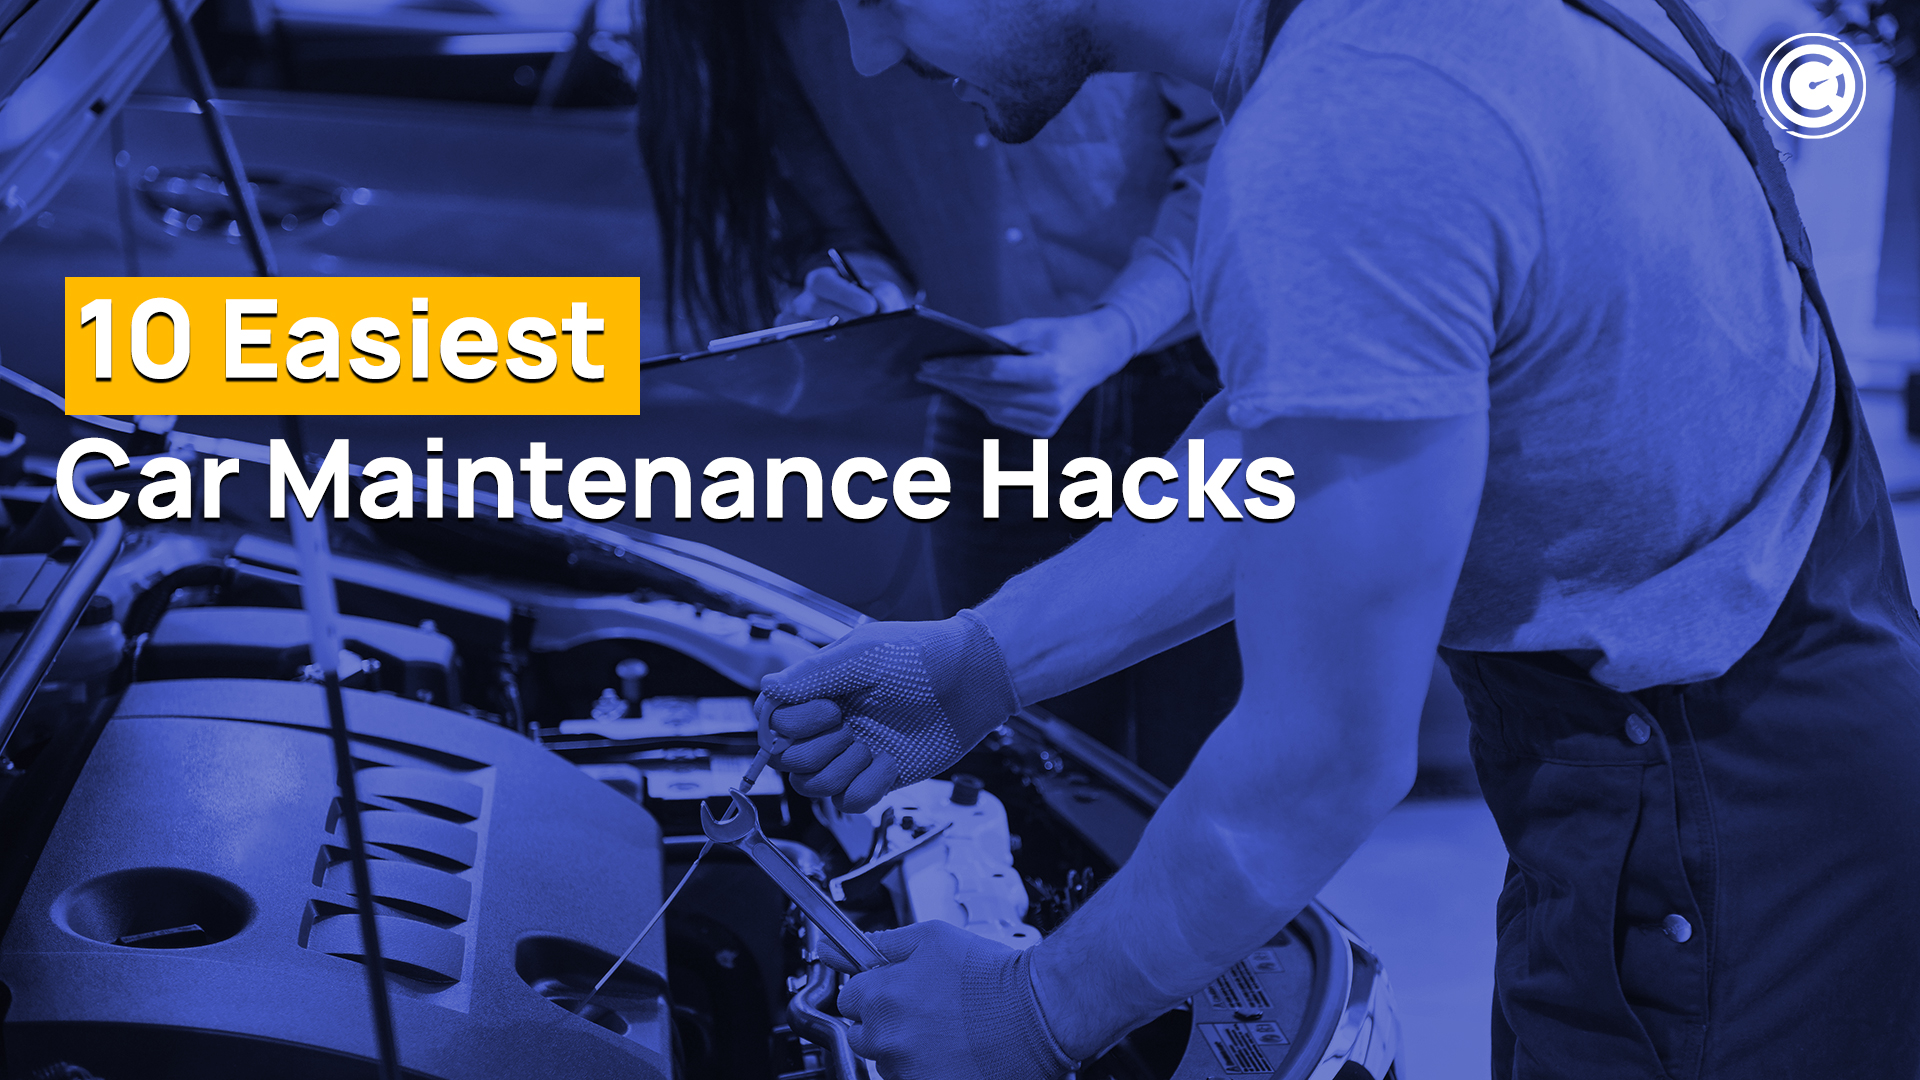 Car Maintenance Hacks